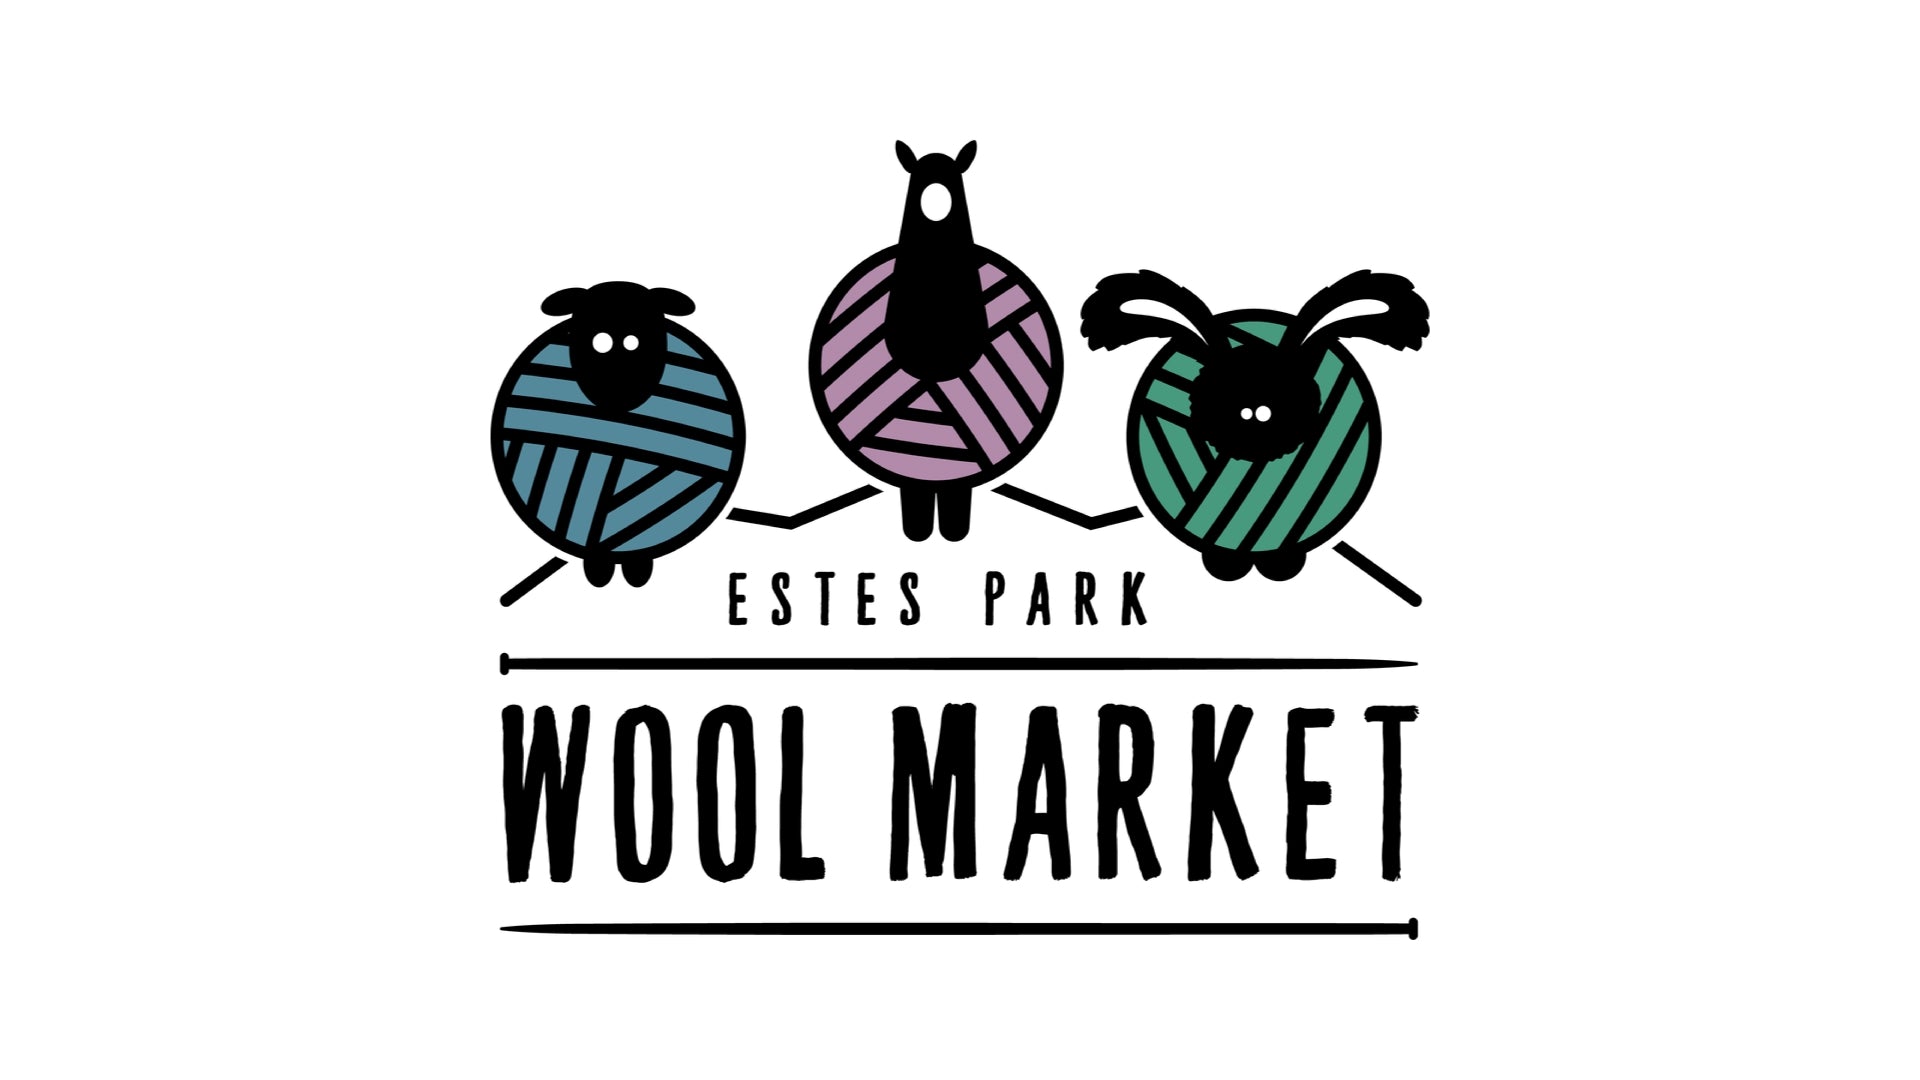 Come Visit Schacht At The Estes Park Wool Market